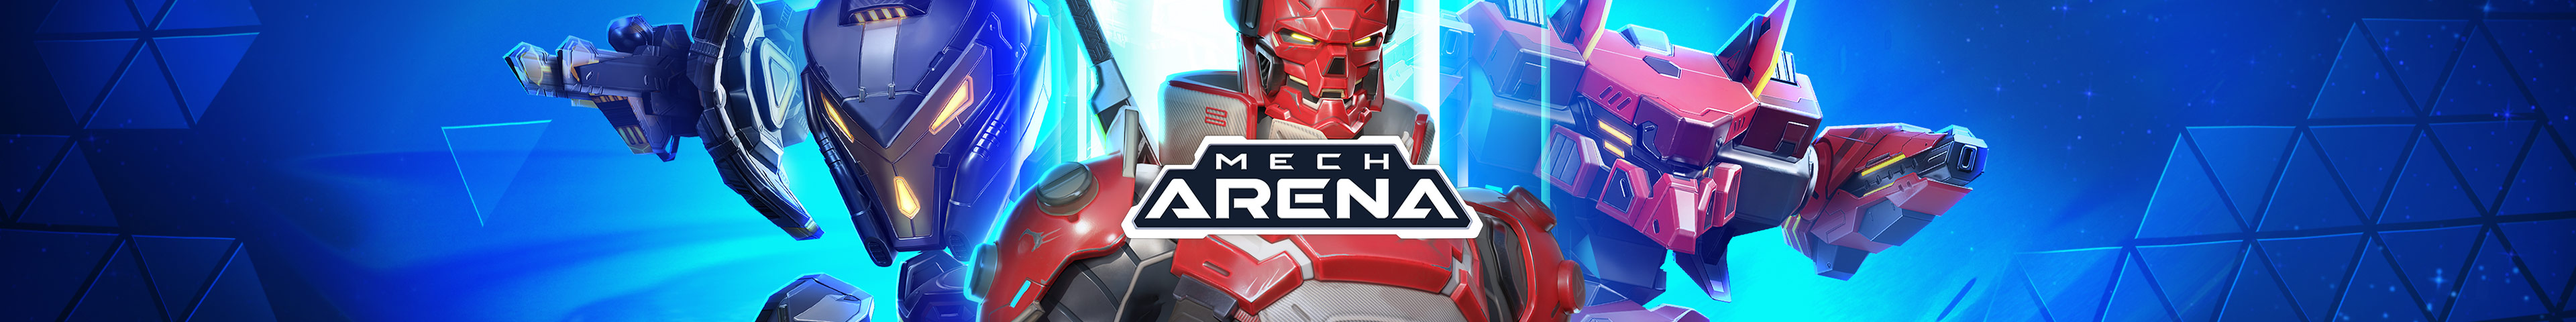 Mech Arena's New Look